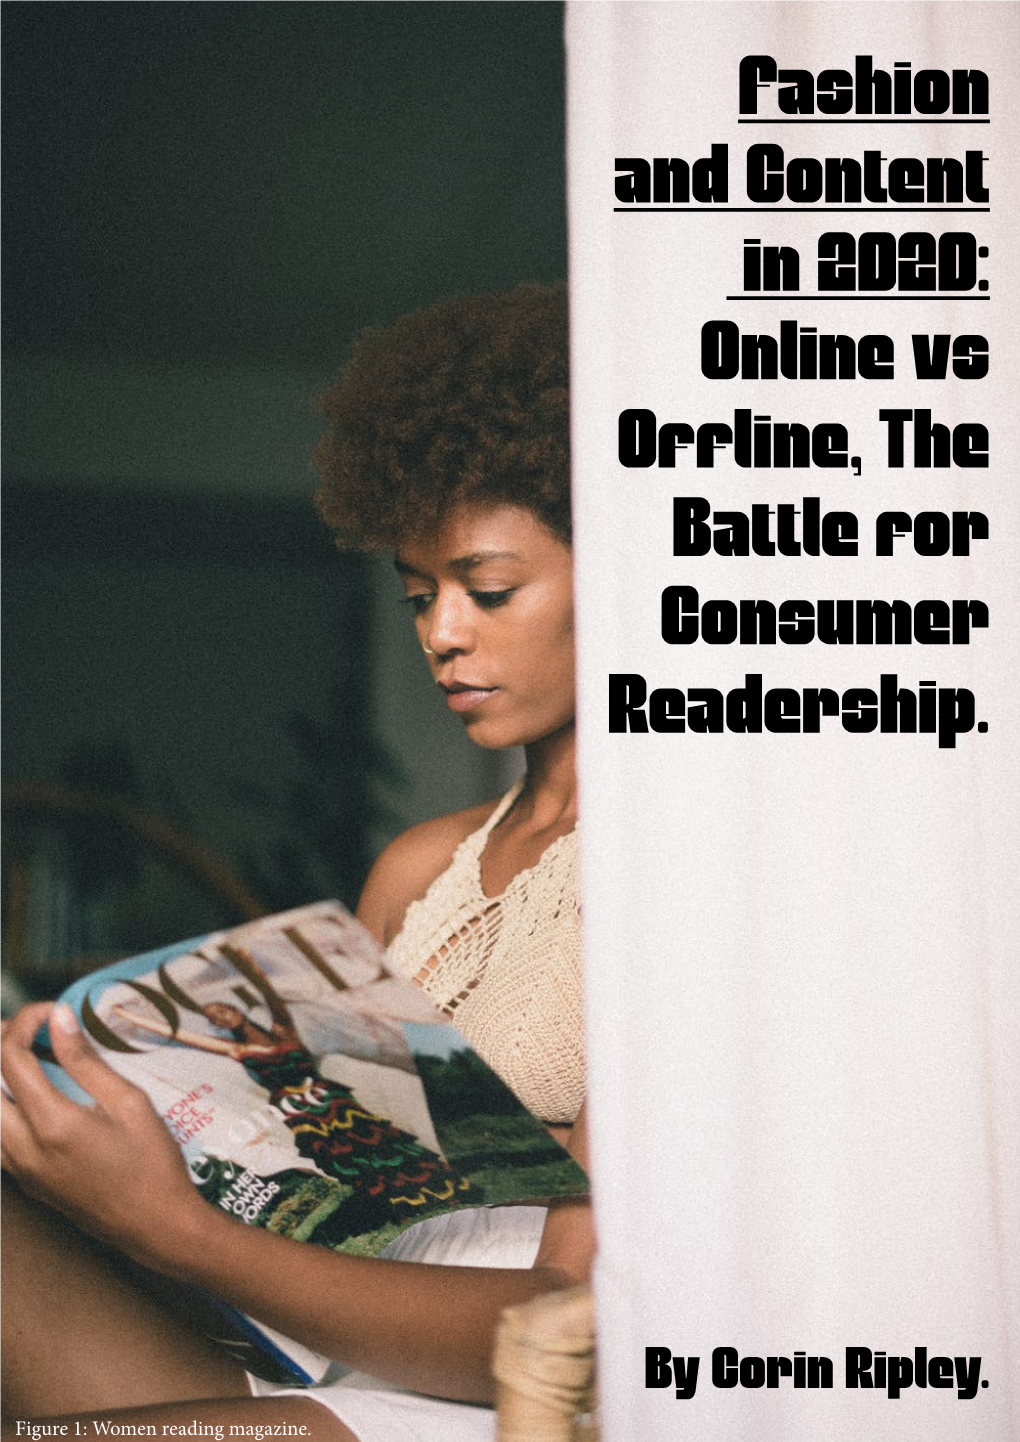 Online Vs Offline, the Battle for Consumer Readership